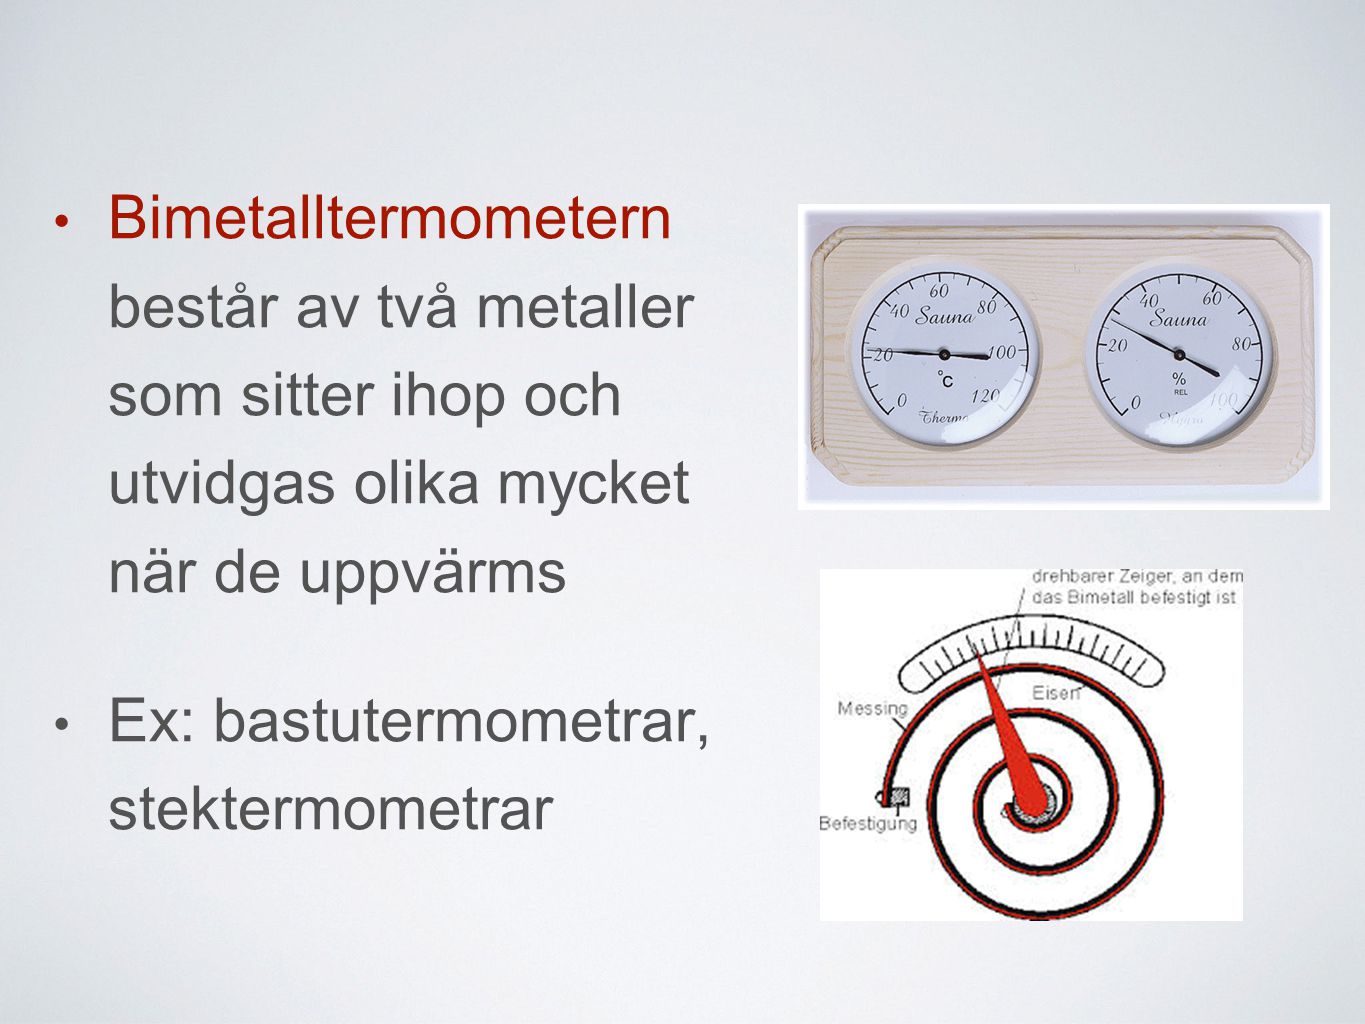 Bimetalltermometern består av två metaller som sitter ihop och utvidgas olika mycket när de uppvärms